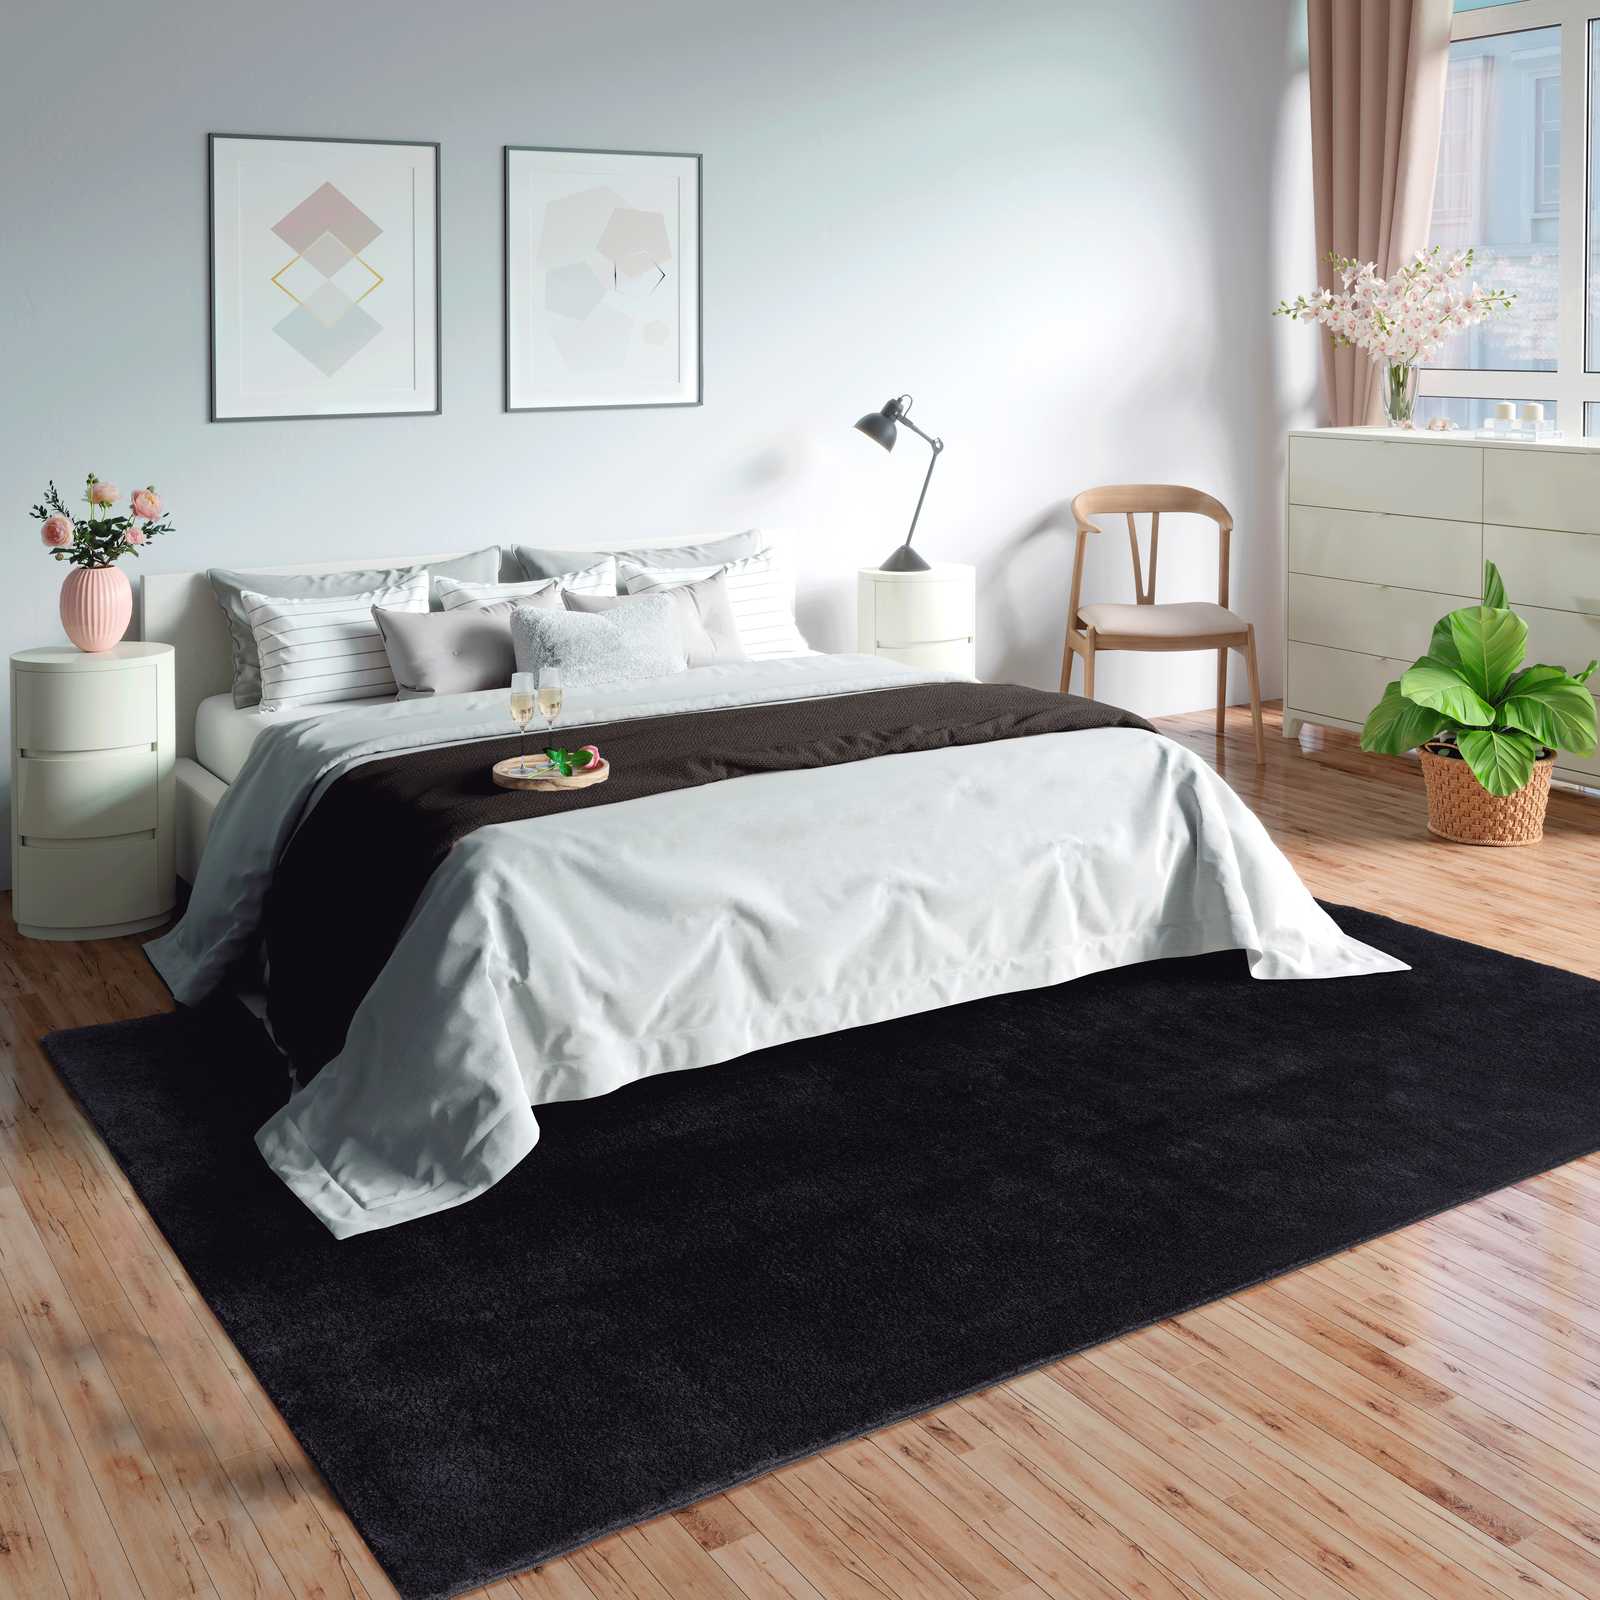 Velvety high pile carpet in black - 110 x 60 cm
